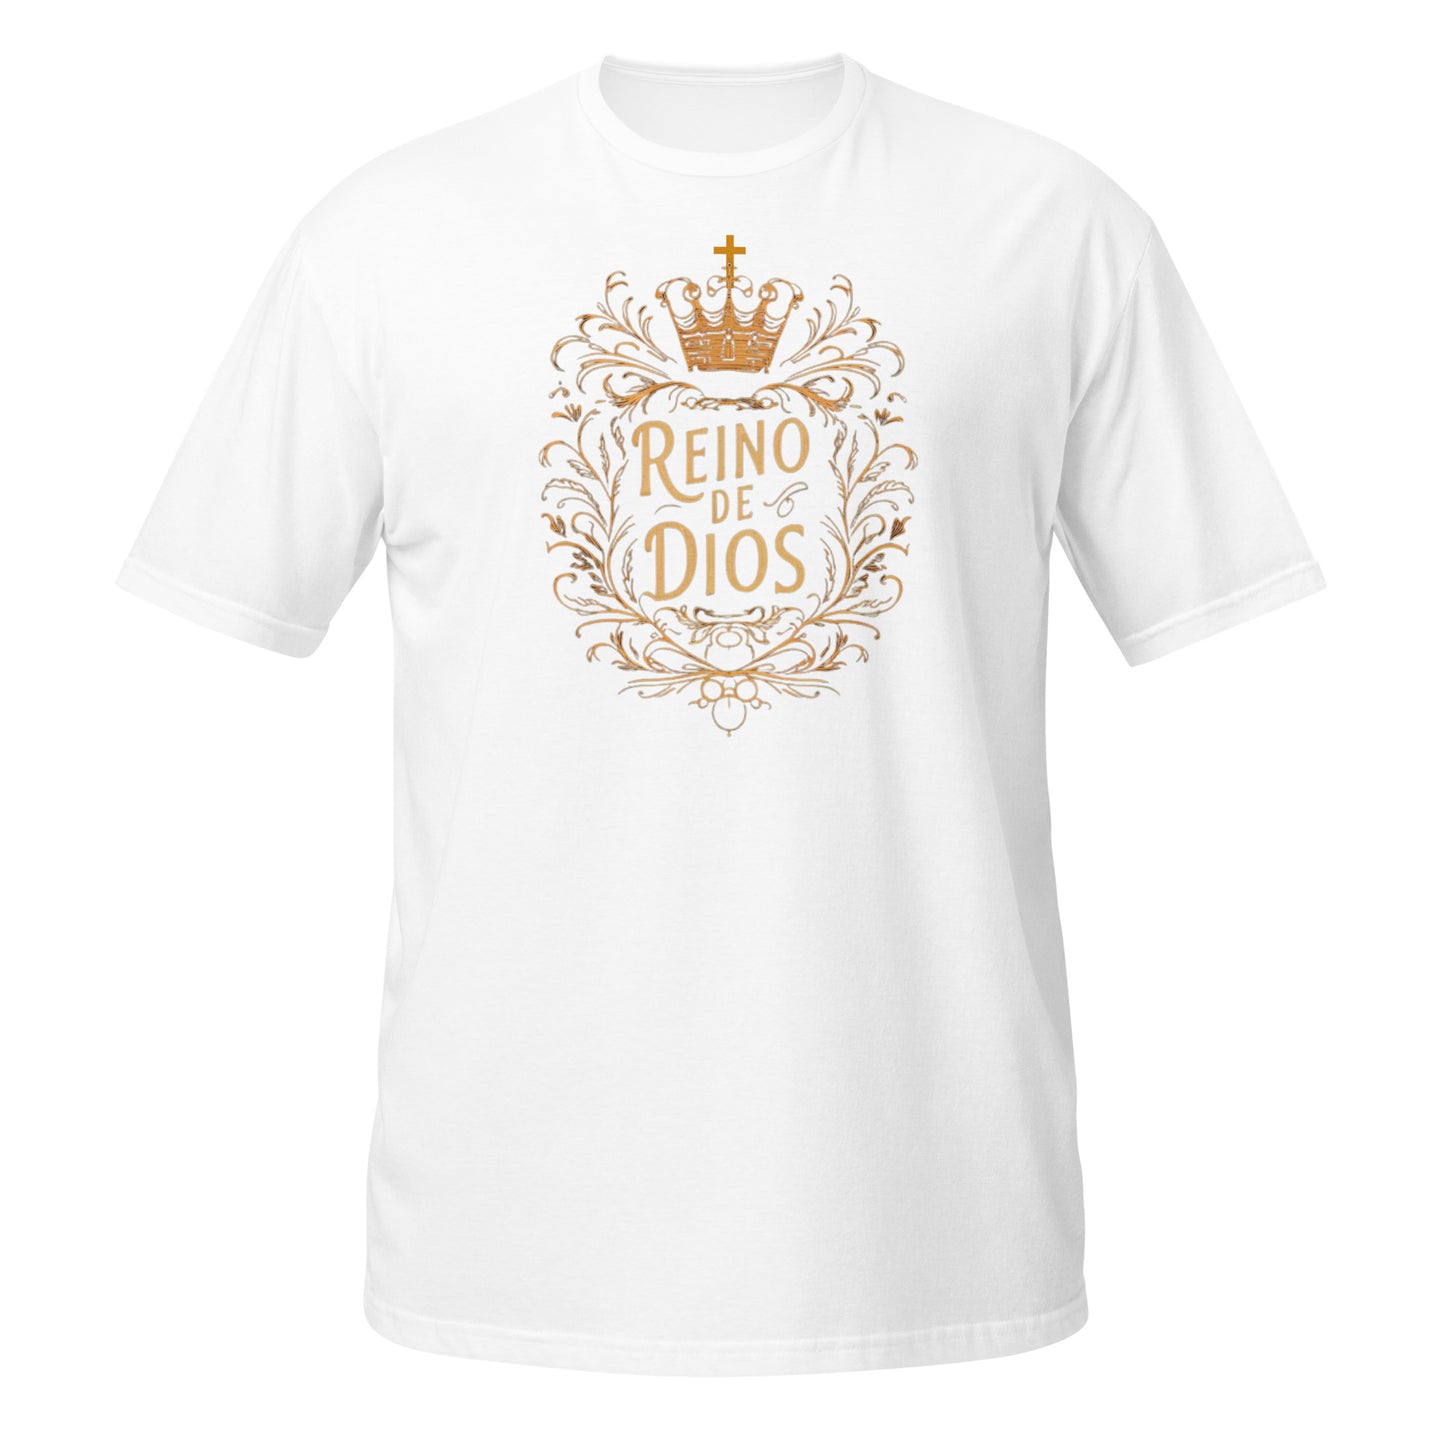 Kingdom of God - unisex t-shirt